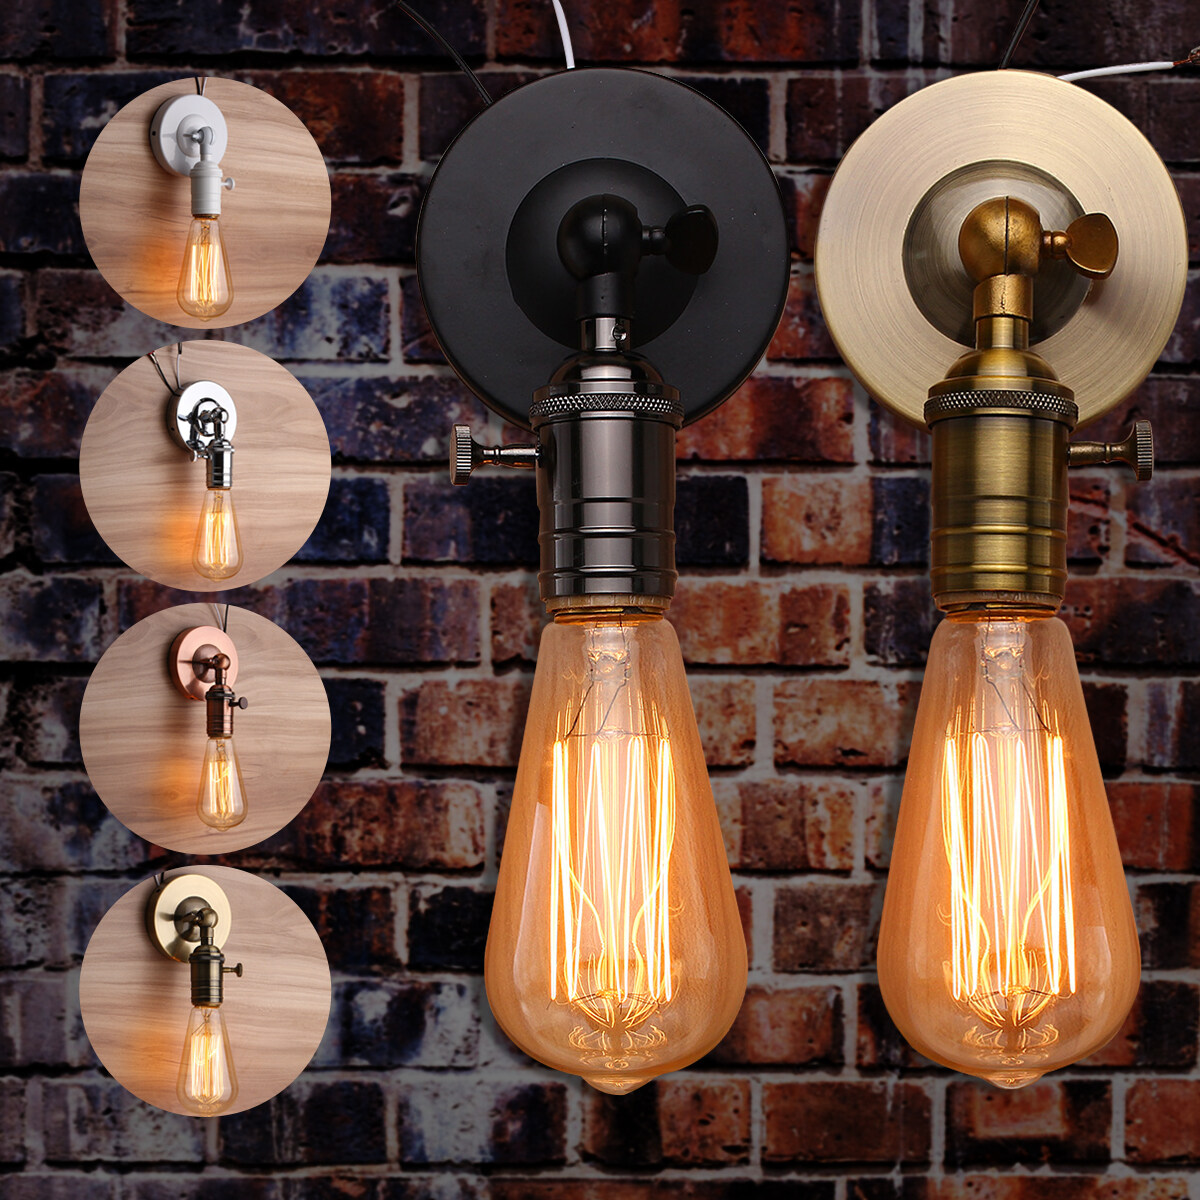 E27 Vintage Industrial Lamp Light Bulb Holder Antique Retro Edison Light fitting